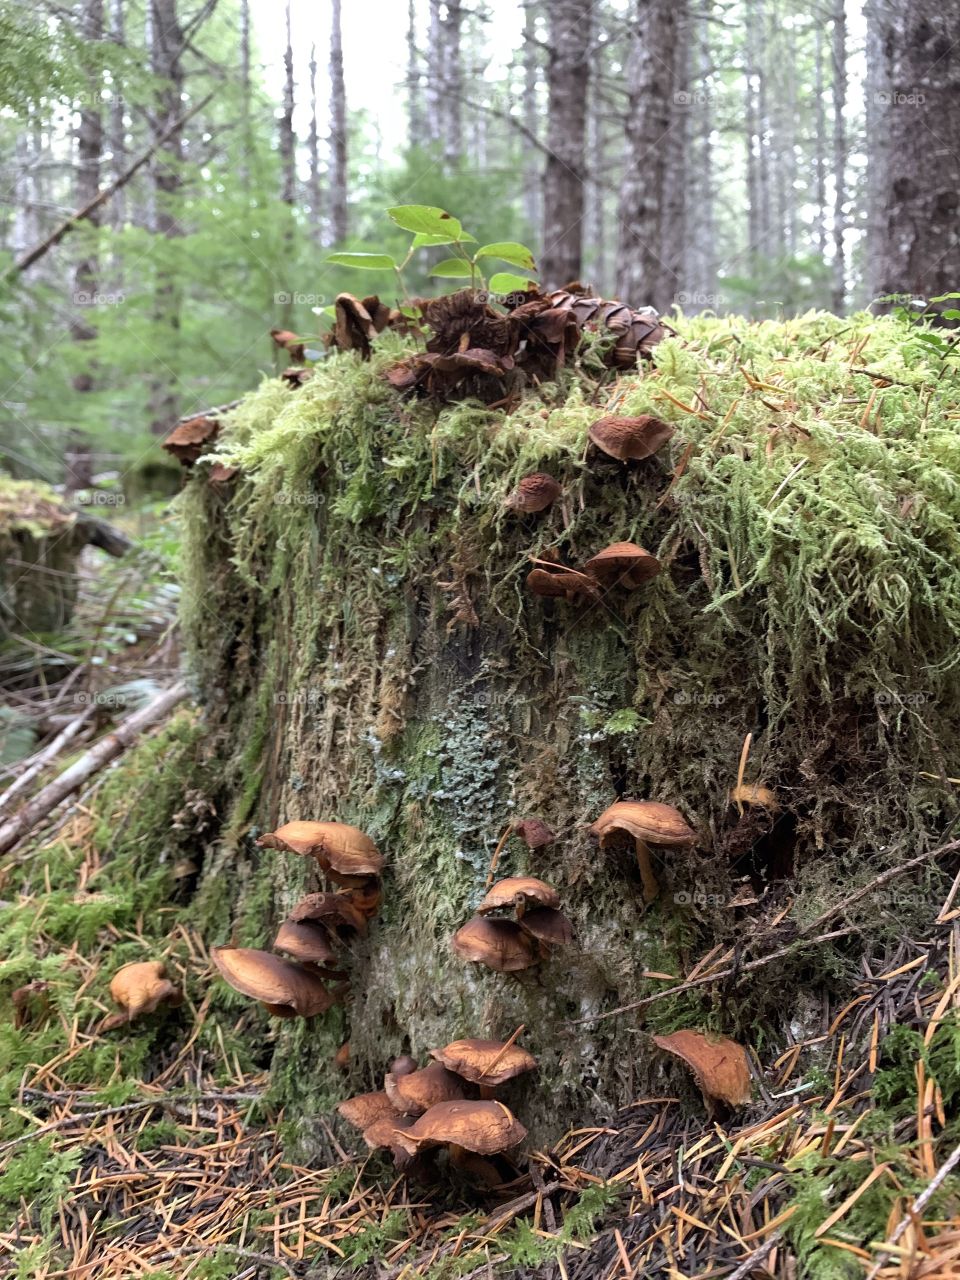 Mushroom stump